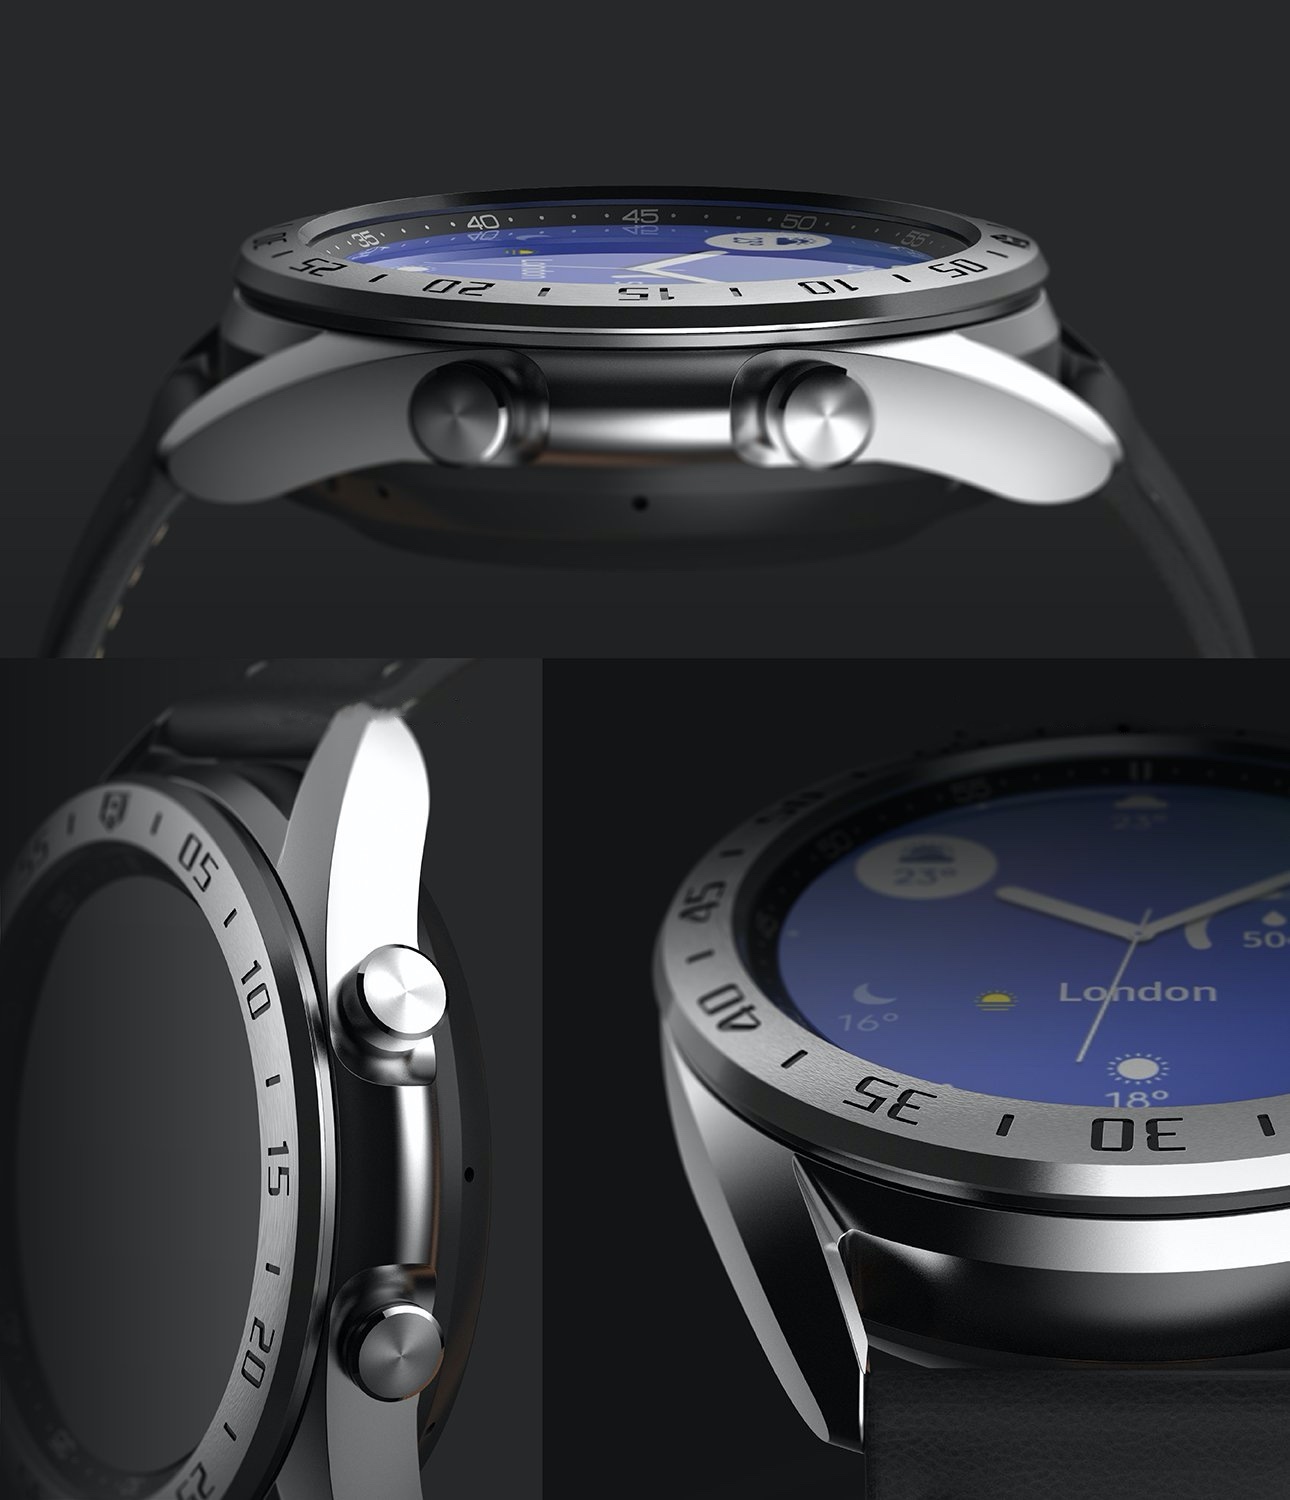 Ringke Bezel Styling Samsung Galaxy Watch 3 41mm Stainless Steel Silver GW3-41-01